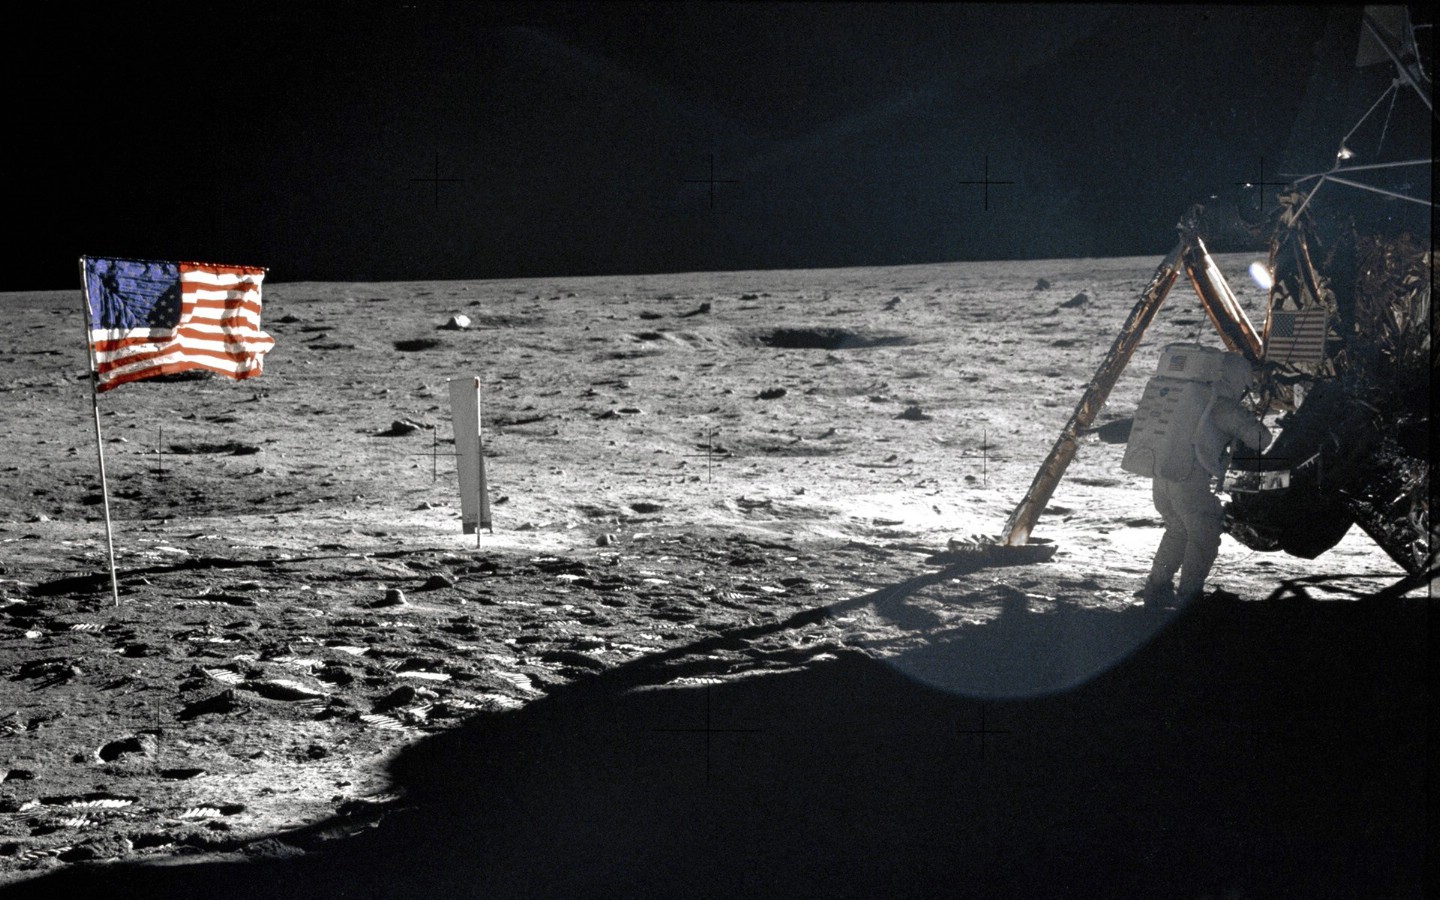 壁纸1440x900One Giant Leap for Mankind  Neil Armstrong On The Moon 登月舱旁的阿姆斯壮壁纸 阿波罗11号登月40周年纪念壁纸壁纸 阿波罗11号登月40周年纪念壁纸图片 阿波罗11号登月40周年纪念壁纸素材 人文壁纸 人文图库 人文图片素材桌面壁纸